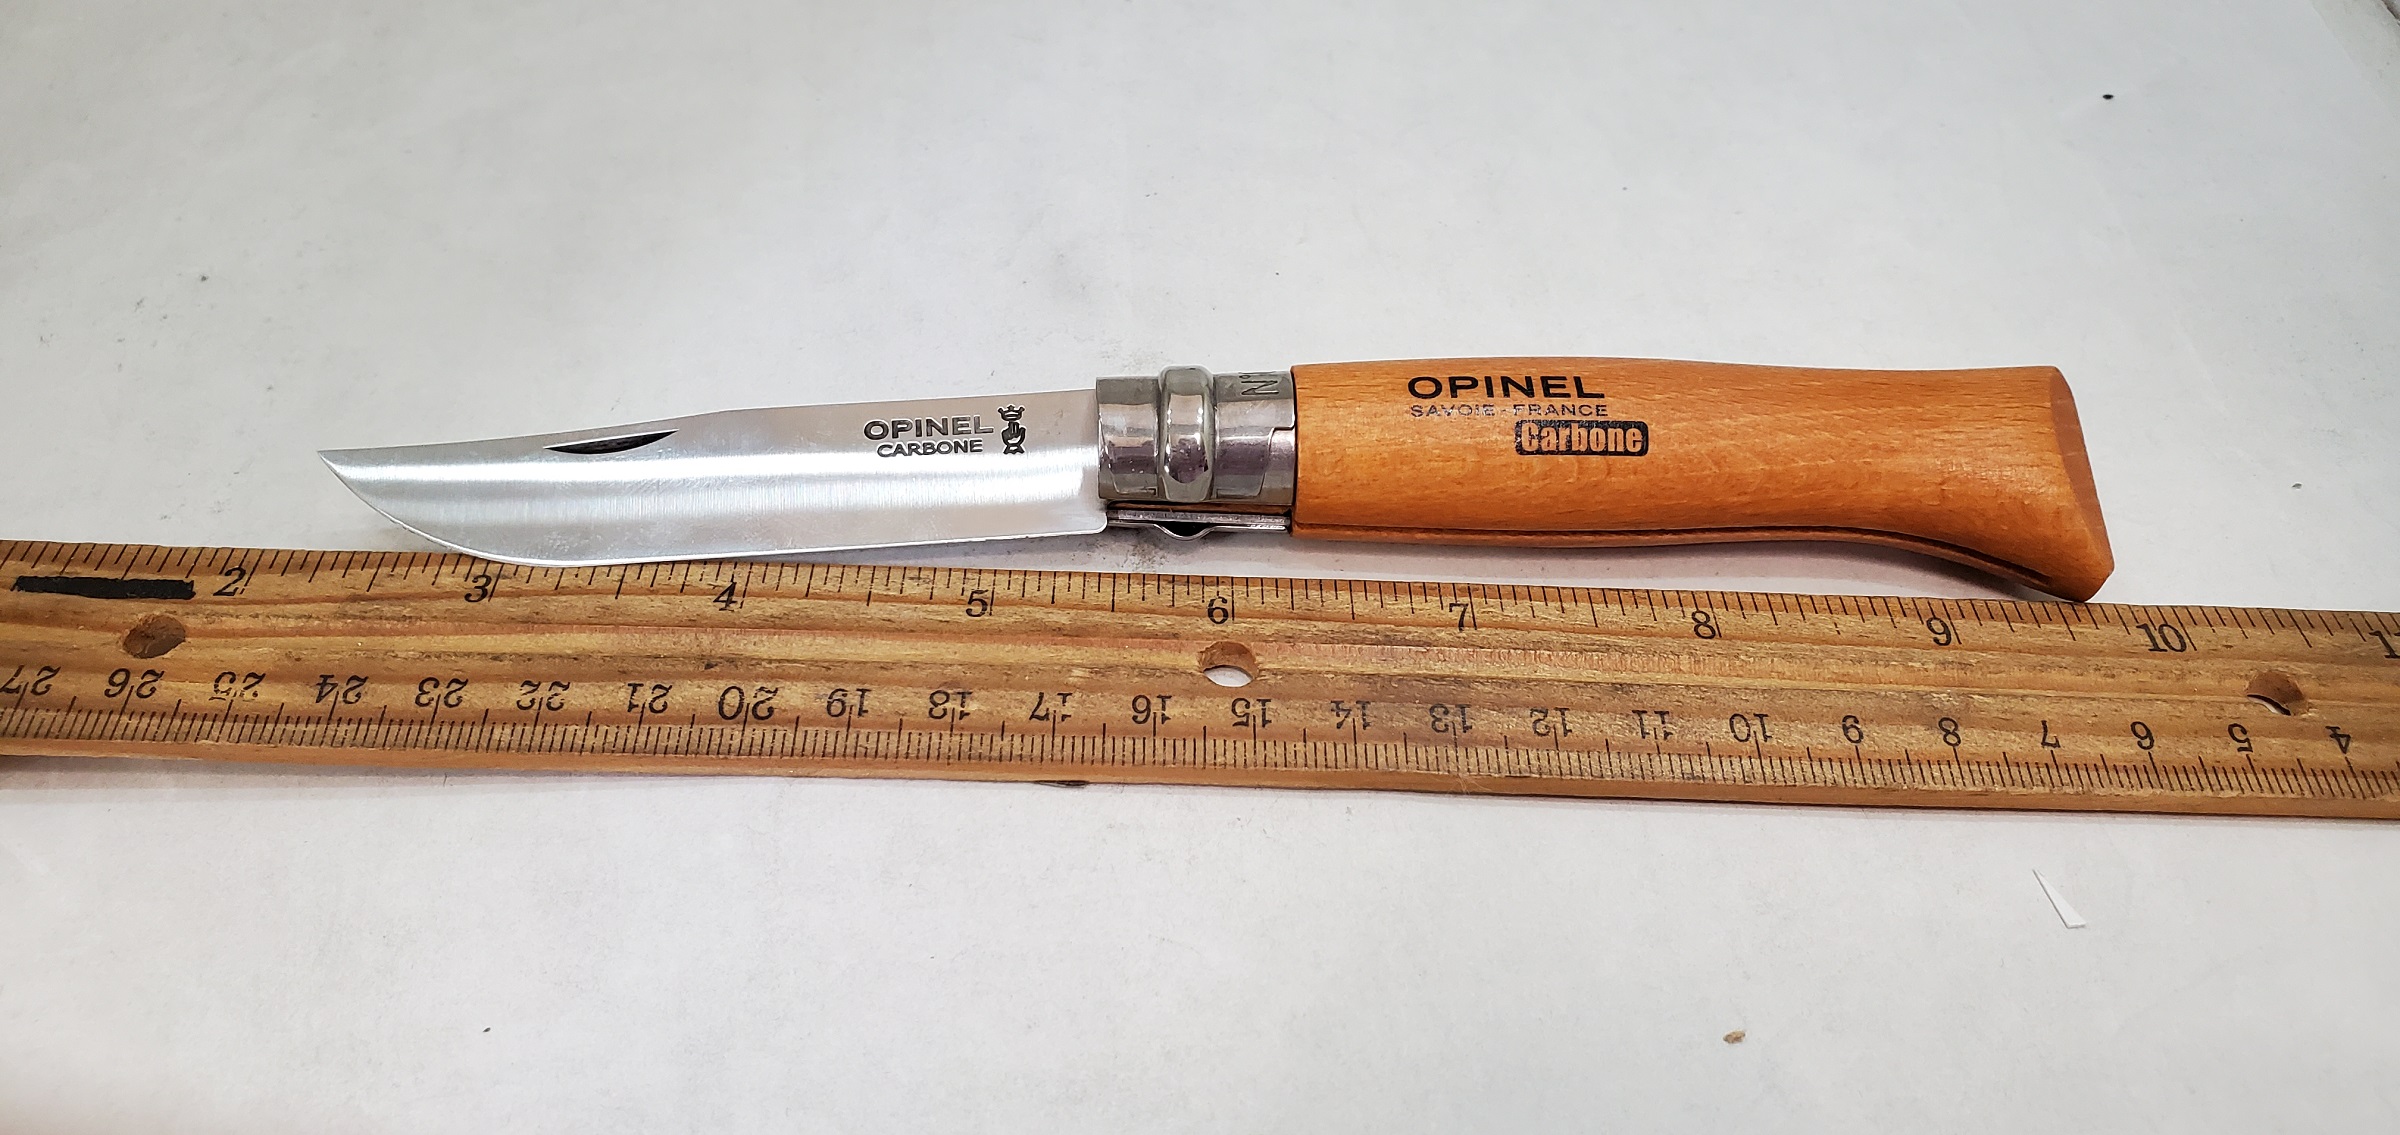 No. 8 Opinel Carbon Knife Knife OP-13080 4-3/8